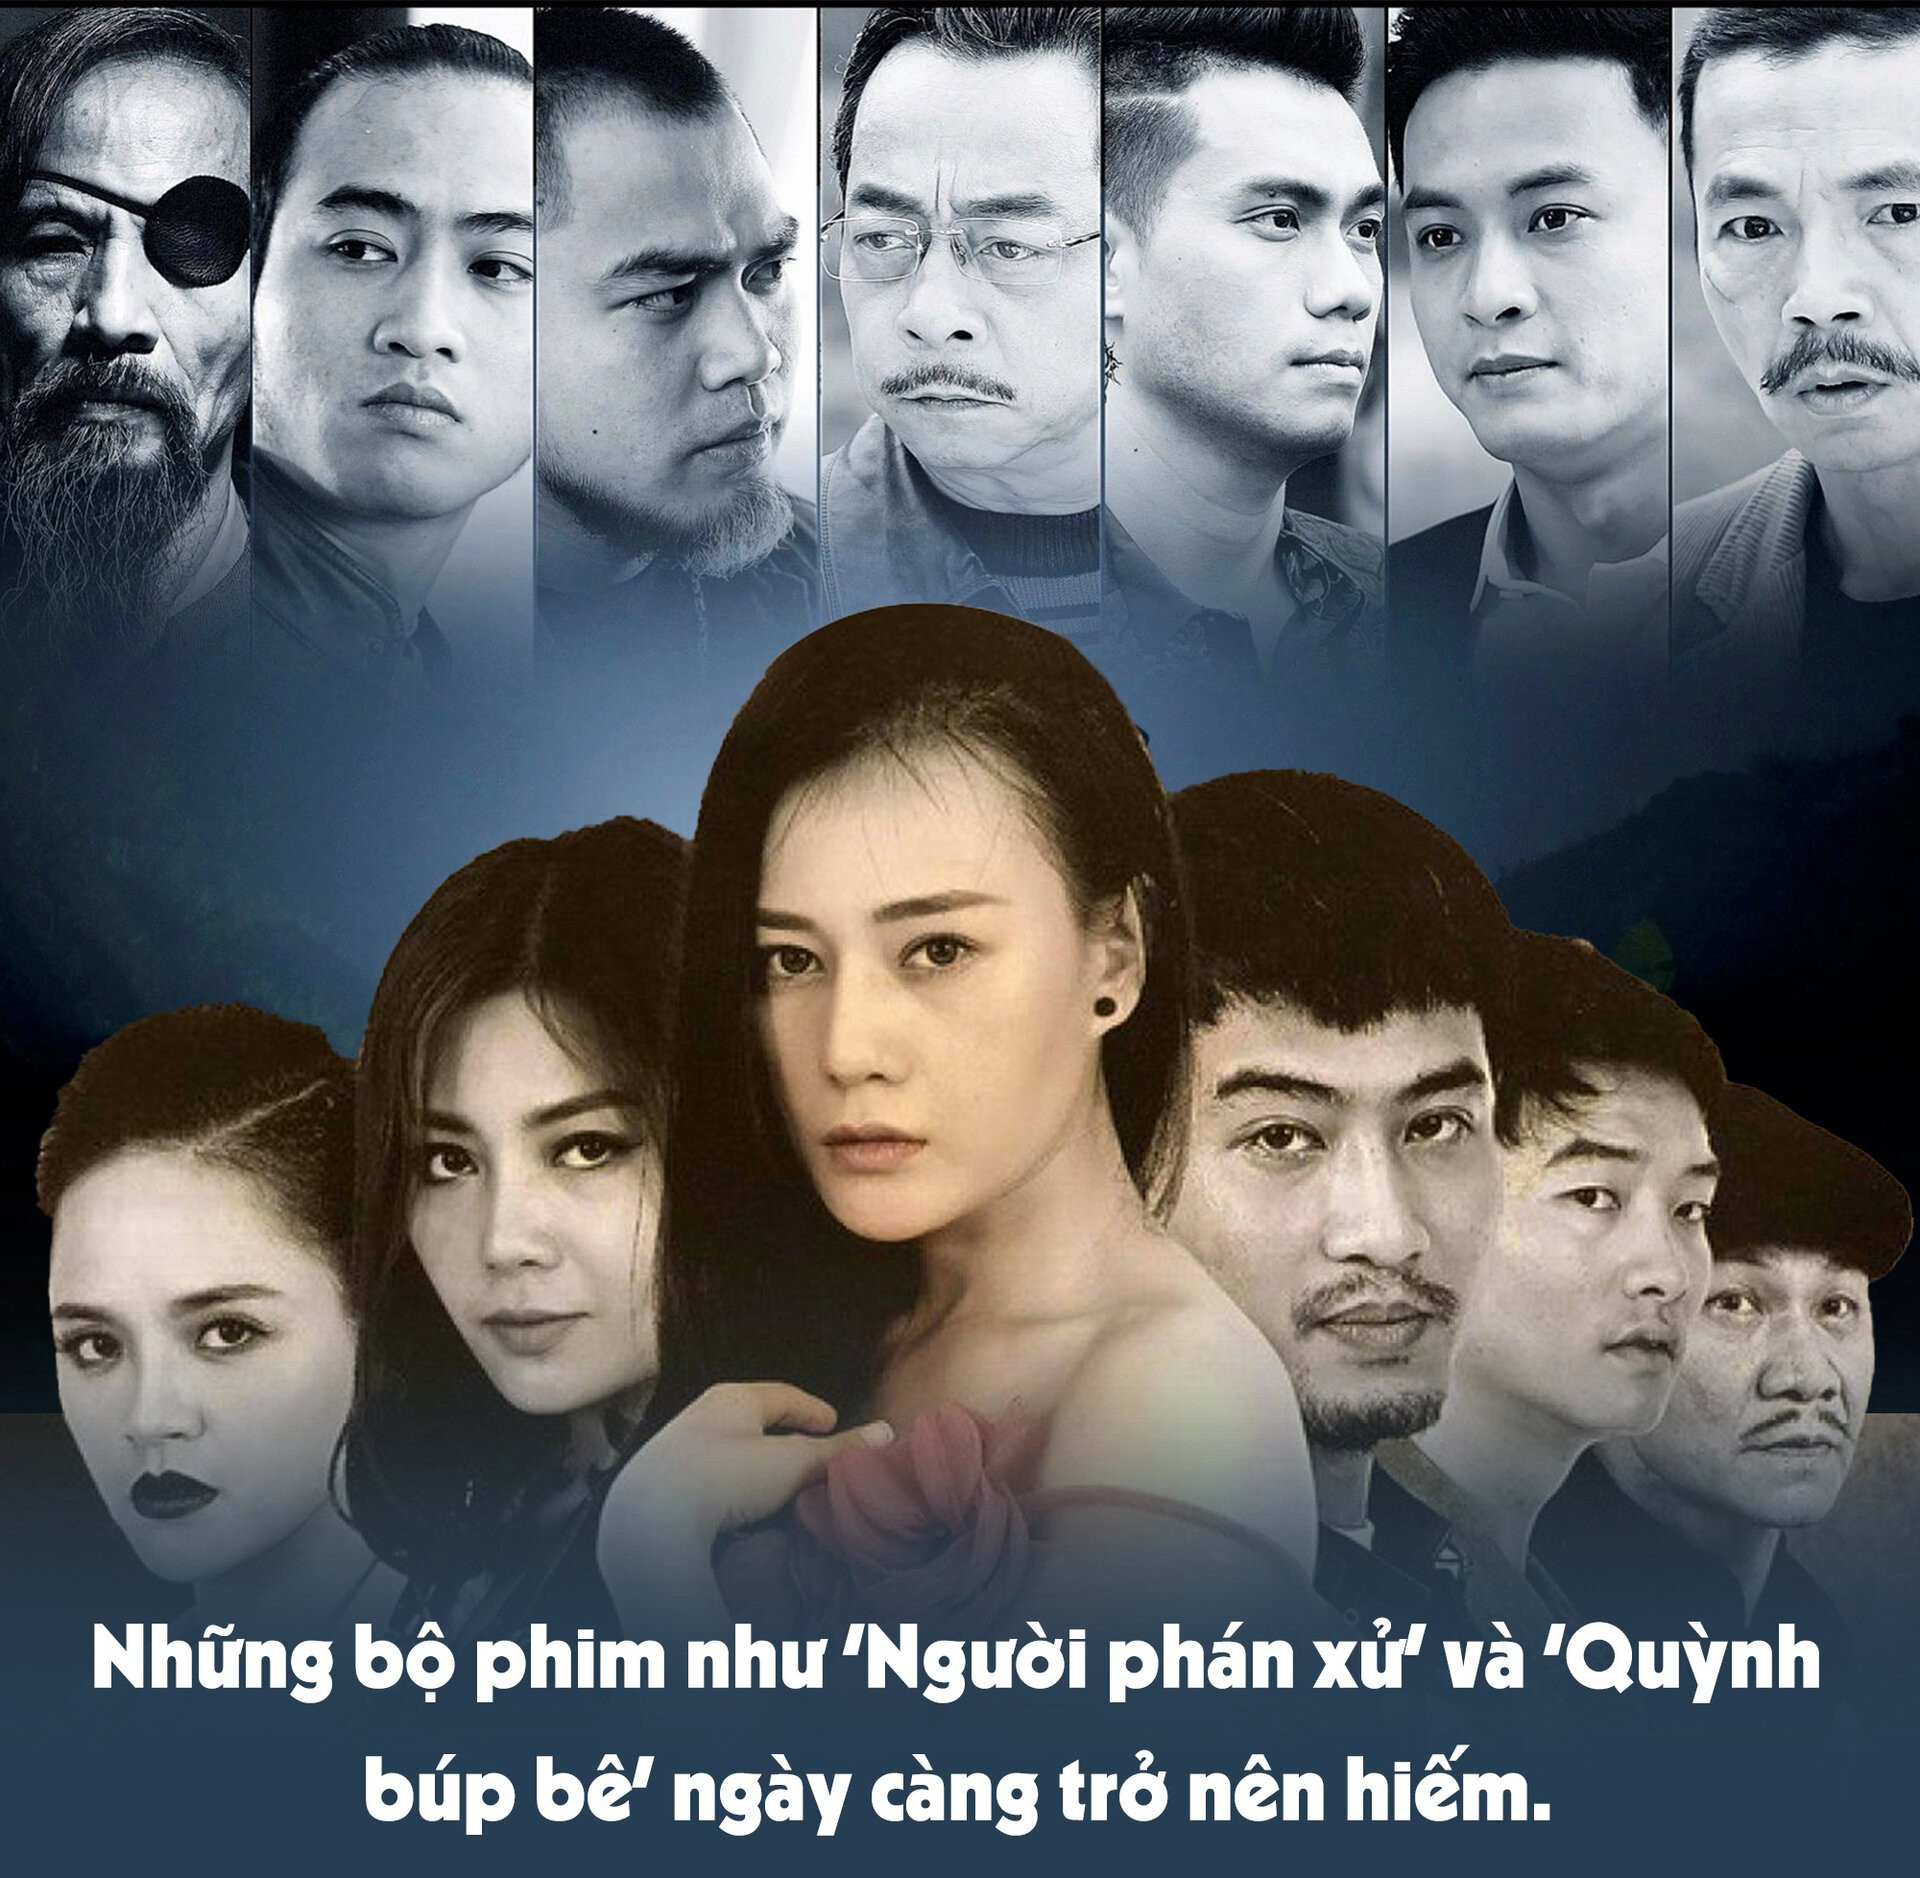 Phim Việt: Motif giống nhau, diễn viên nhẵn mặt, xem phim sau quên phim trước - 6